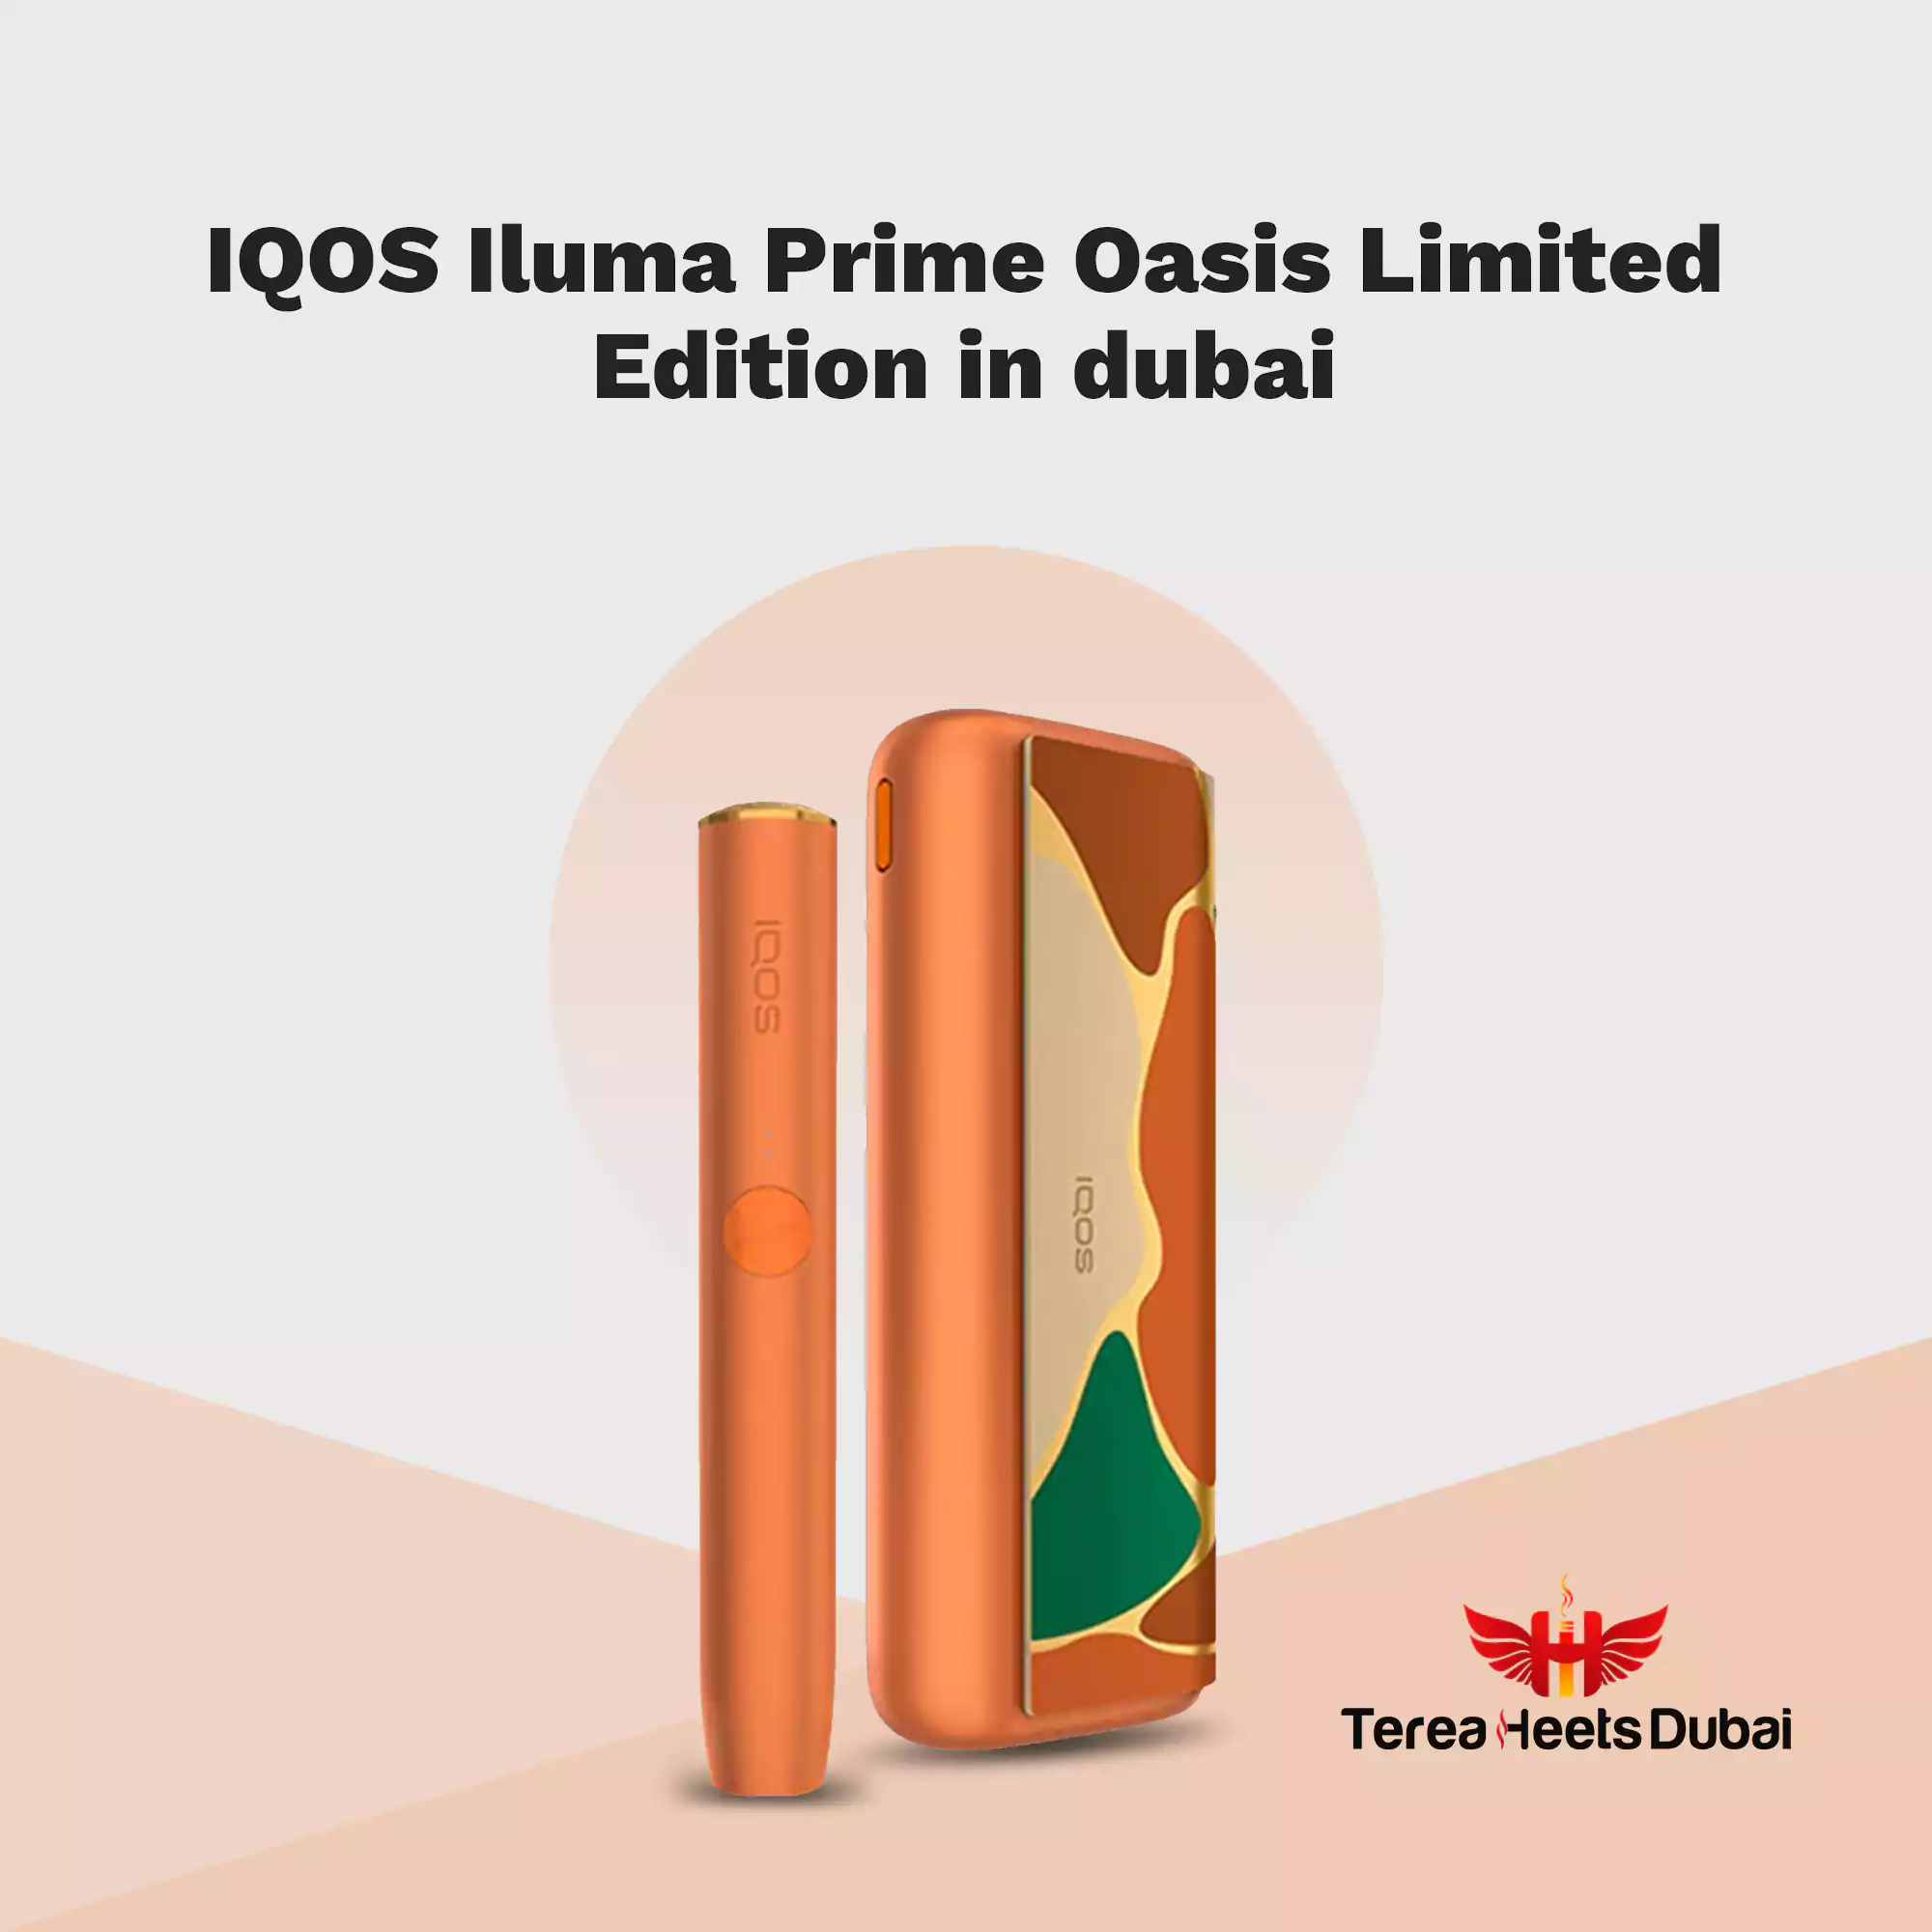 IQOS Iluma Prime Oasis Limited Edition in Dubai